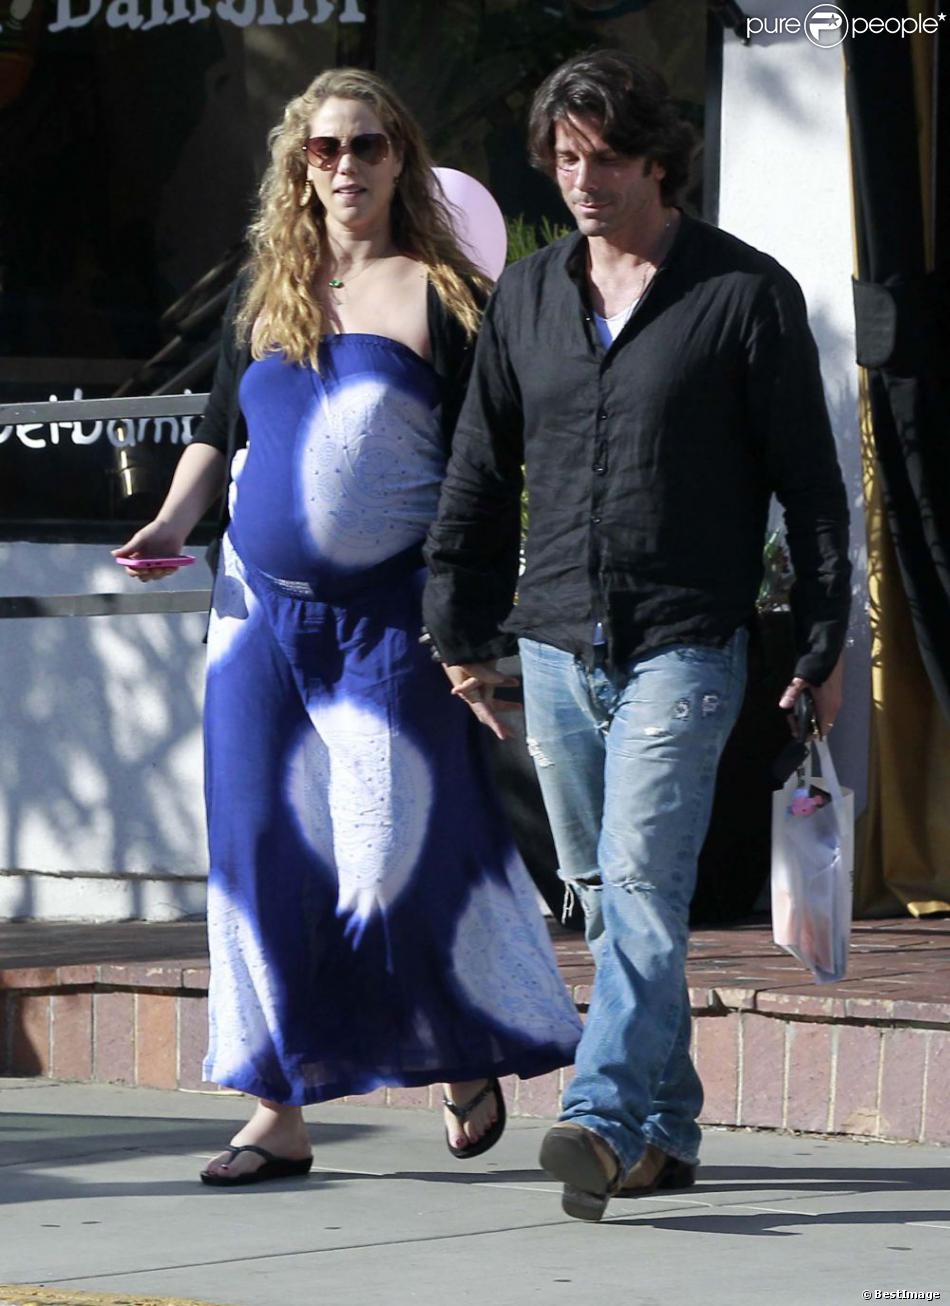 Elizabeth Berkley enceinte complice avec son mari Greg Lauren dans les rues de West Hollywood. Le 26 mai 2012.